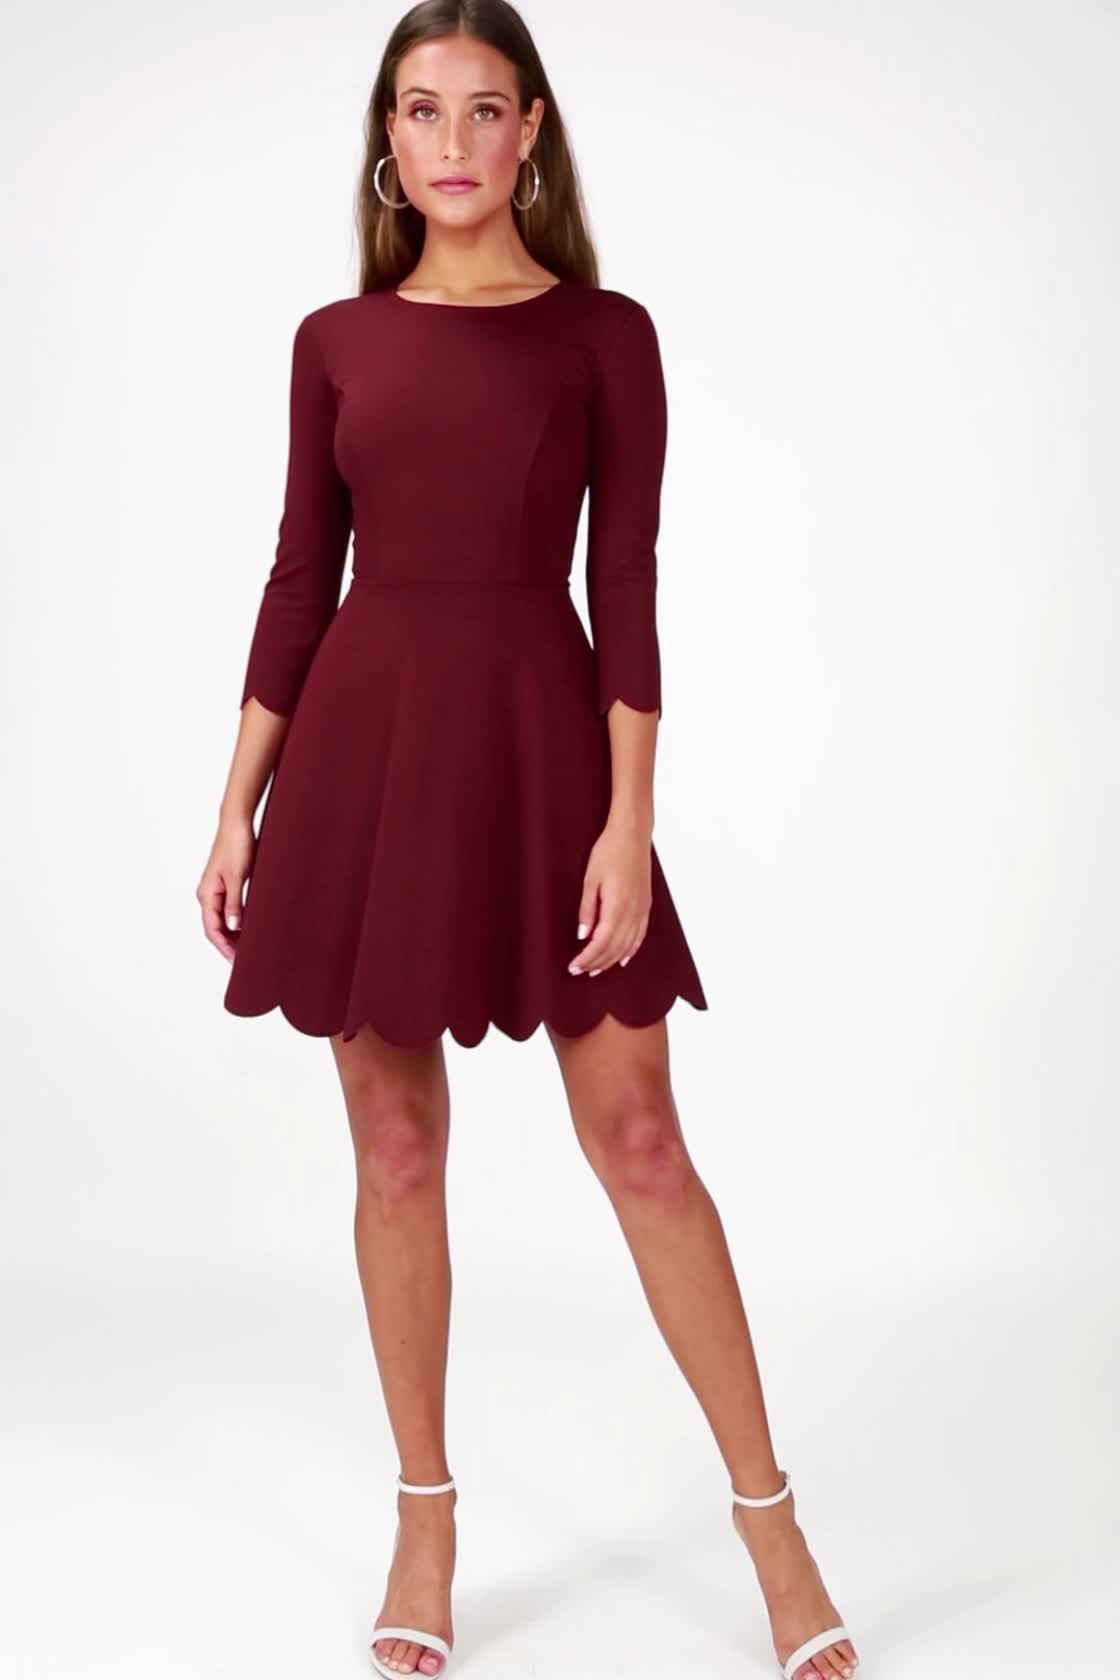 Burgundy Skater Dress - Long Sleeve 